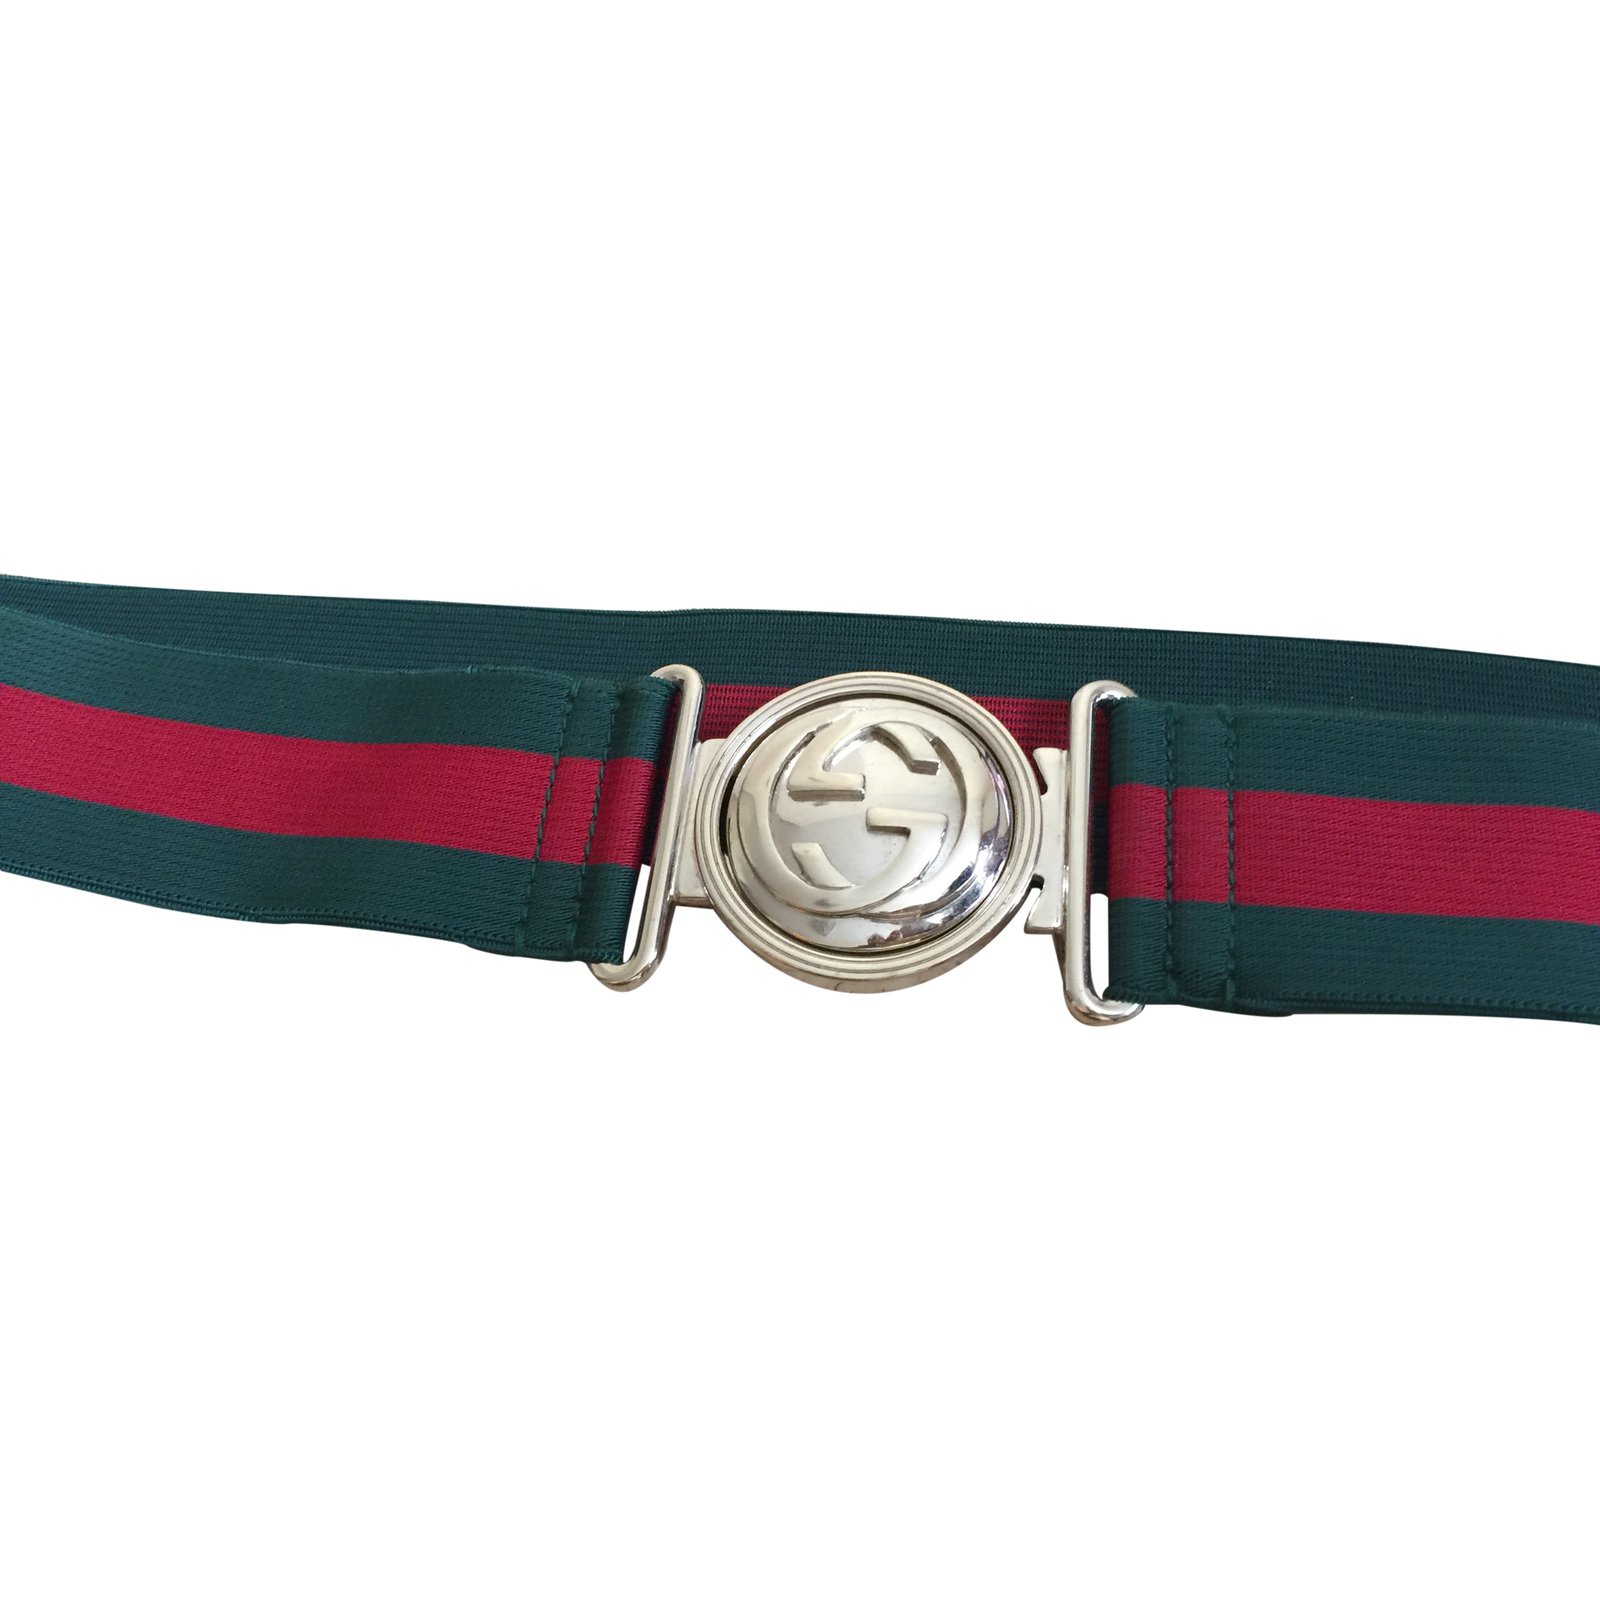 colorful gucci belt